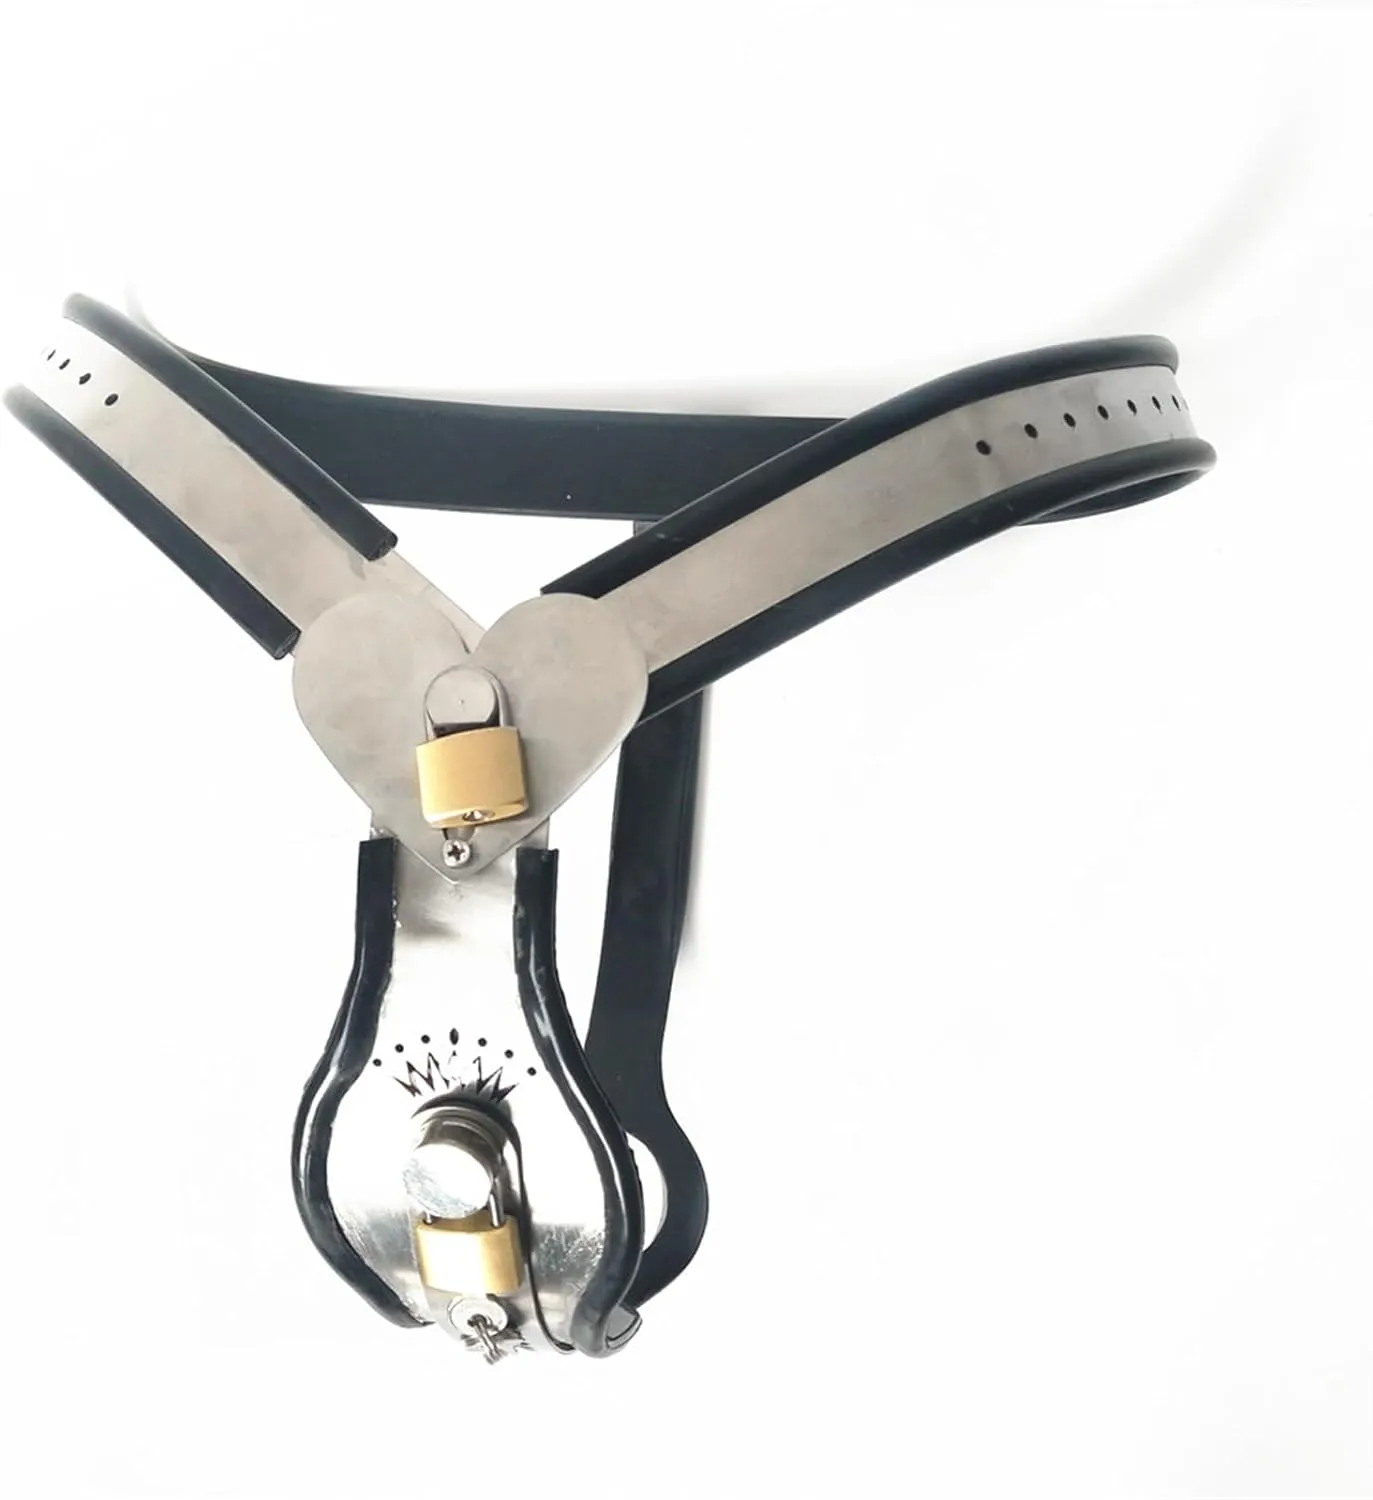 SM dişi paslanmaz çelik iffet kemer kilitleme köle deliği metal iffet cihazı bdsm seks oyuncak (renk: siyah, boyut: 90-100cm)